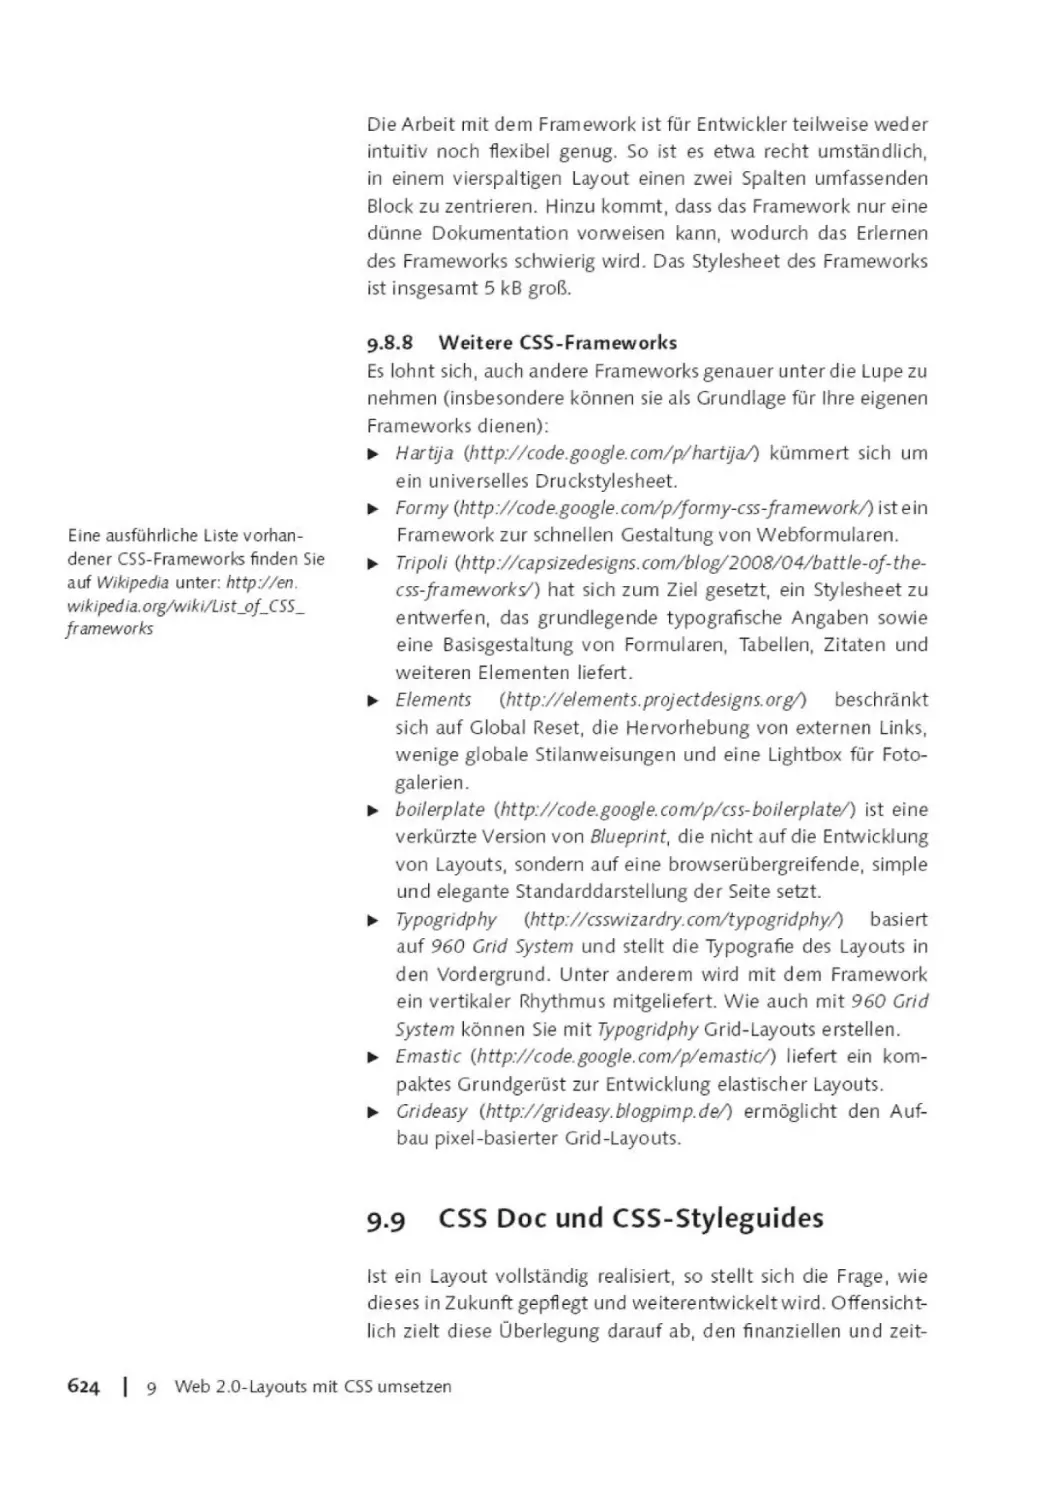 9.8.8      Weitere CSS-Frameworks
9.9       CSS Doc und CSS-Styleguides